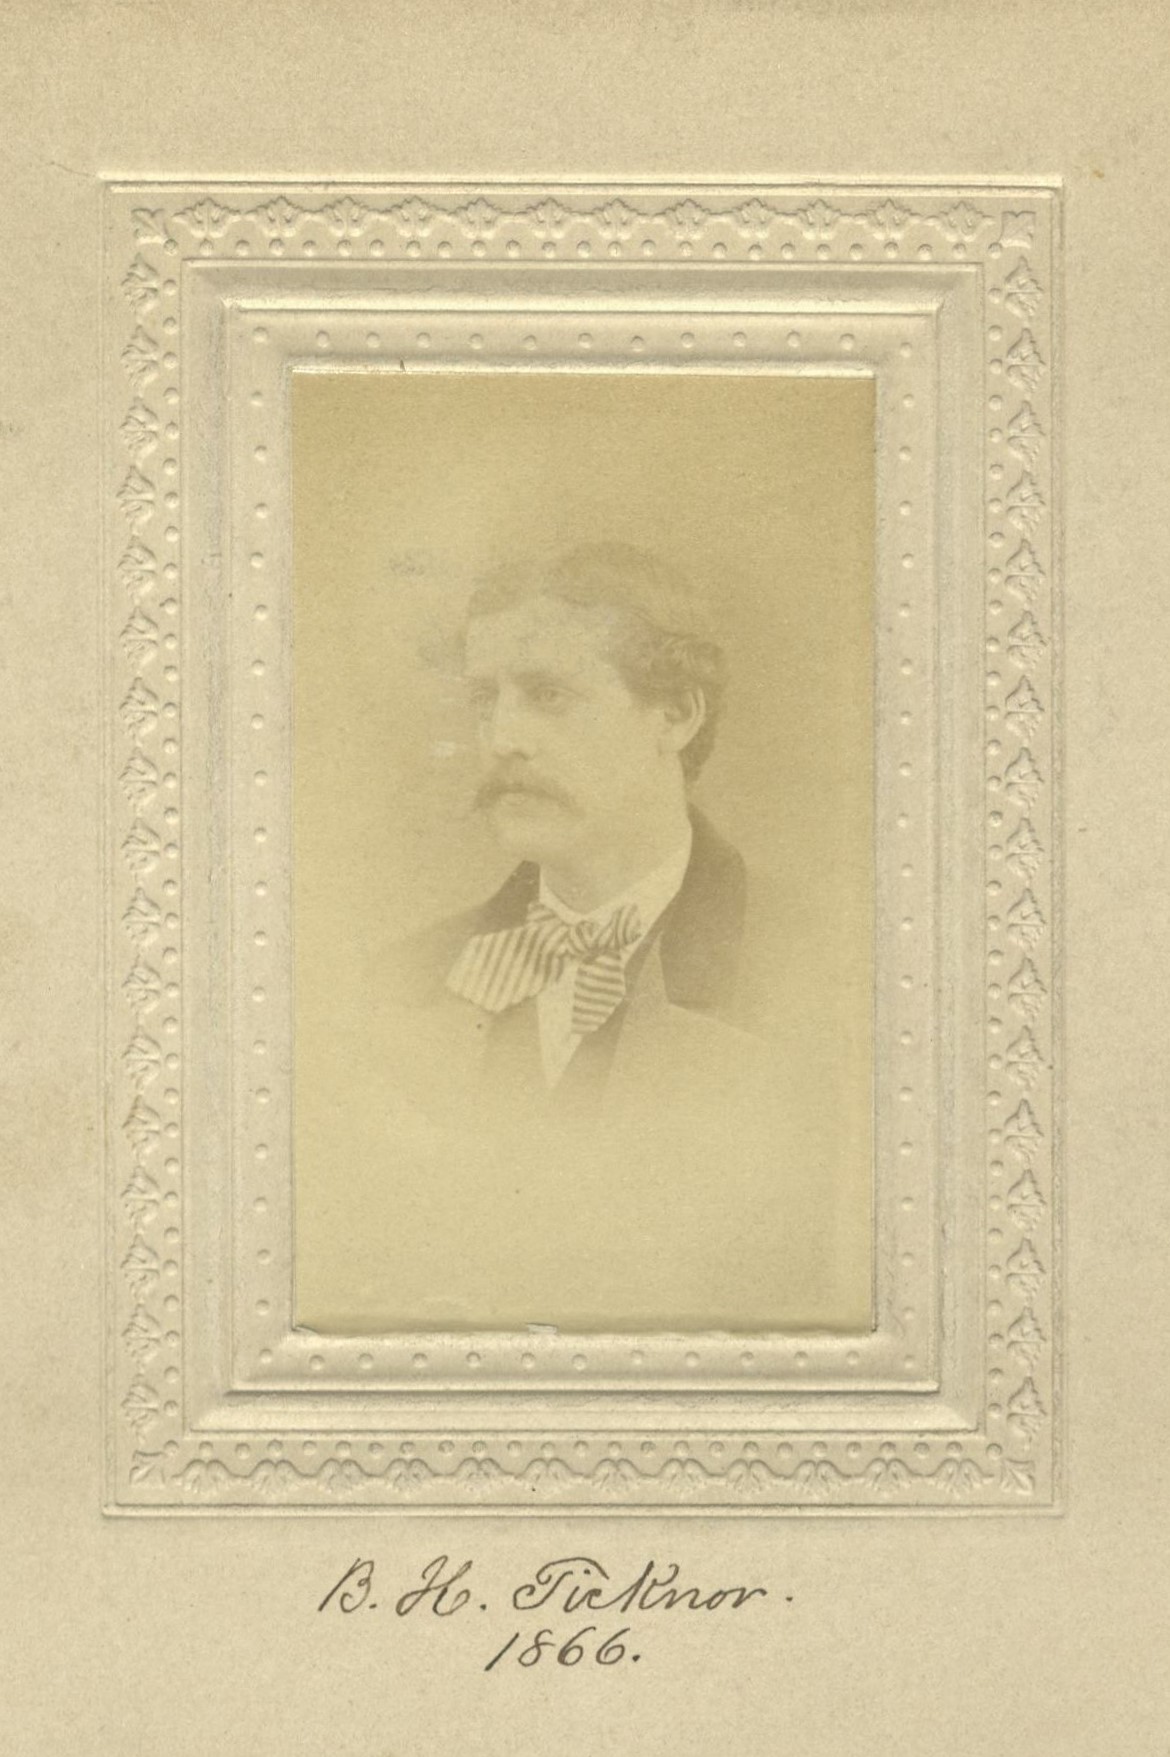 Member portrait of Benjamin Holt Ticknor